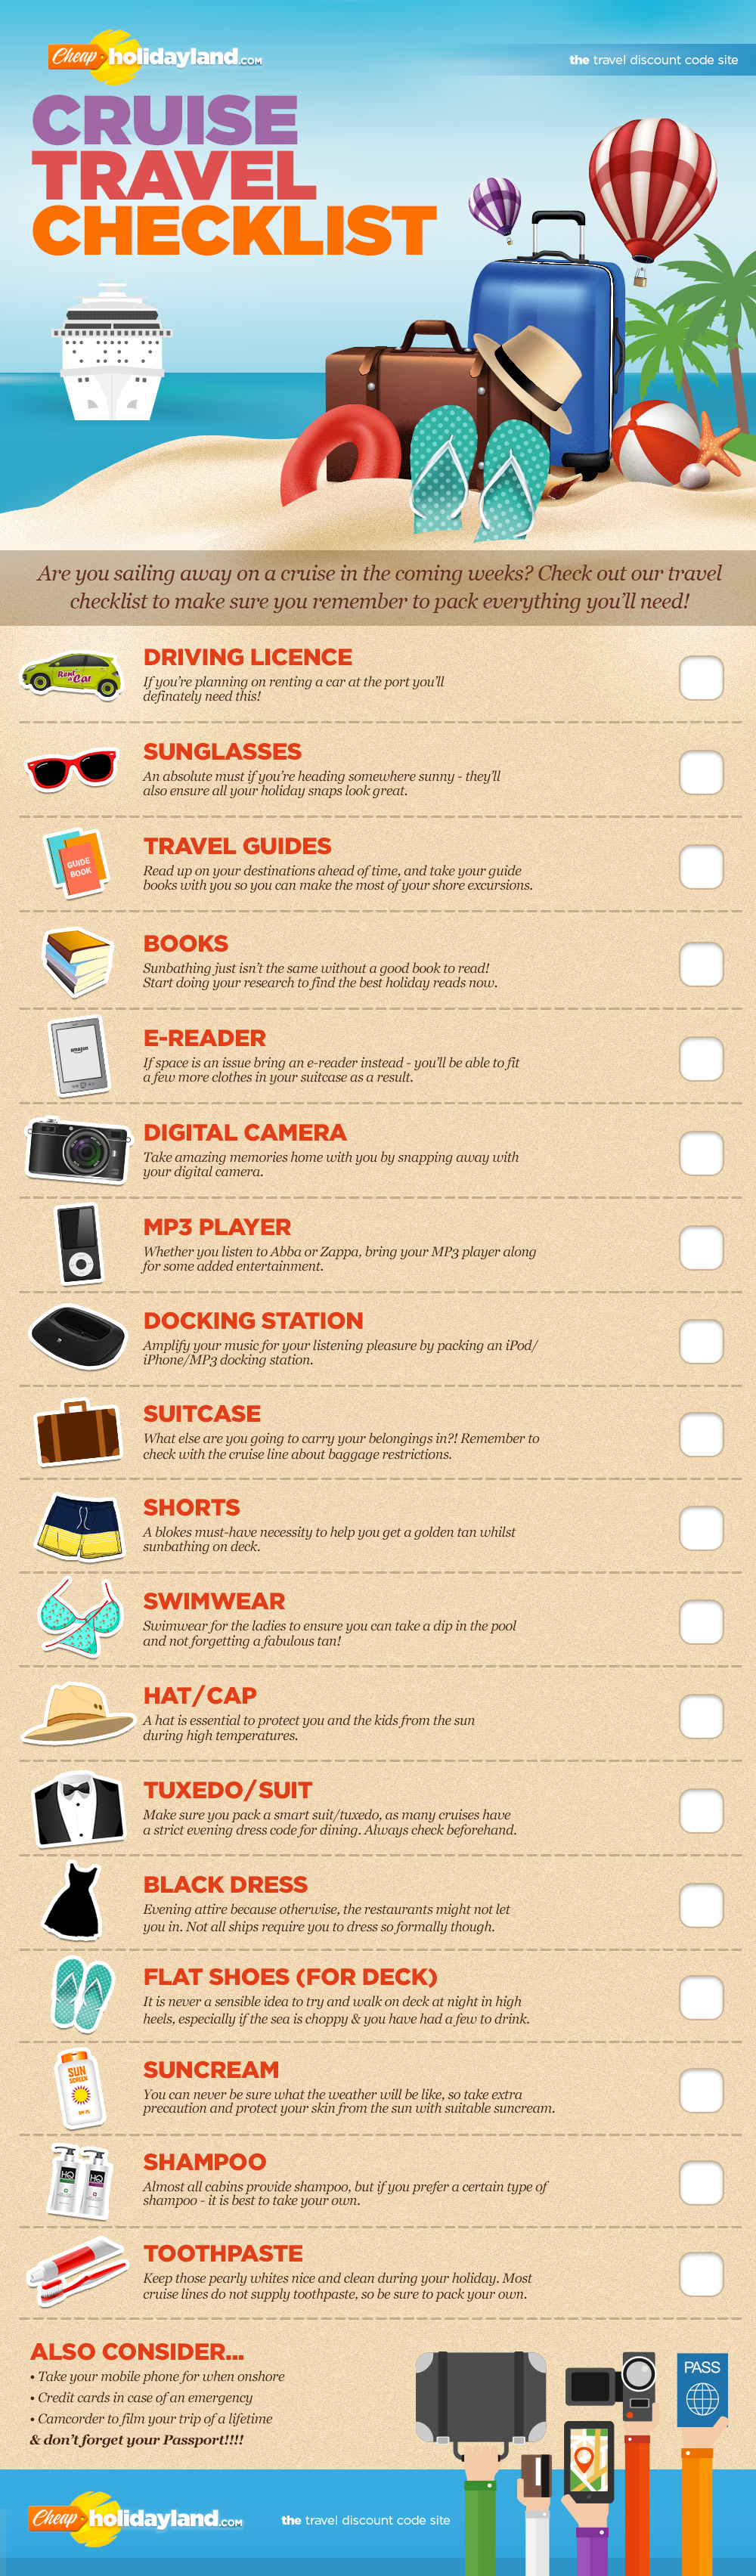 cruise travel checklist